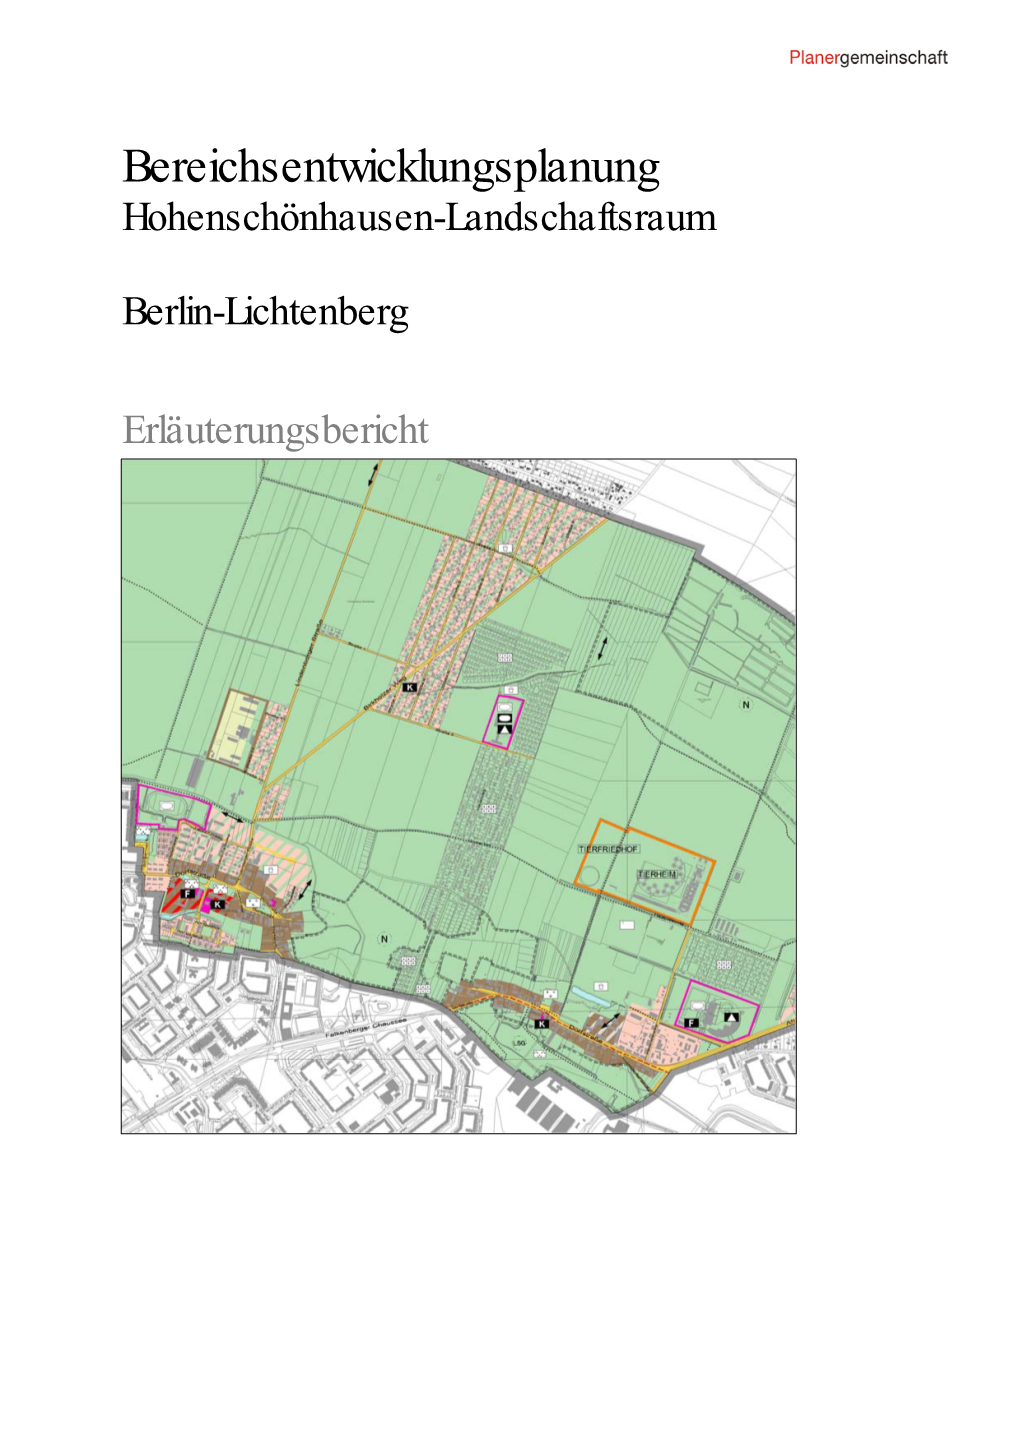 Bereichsentwicklungsplanung Hohenschönhausen-Landschaftsraum